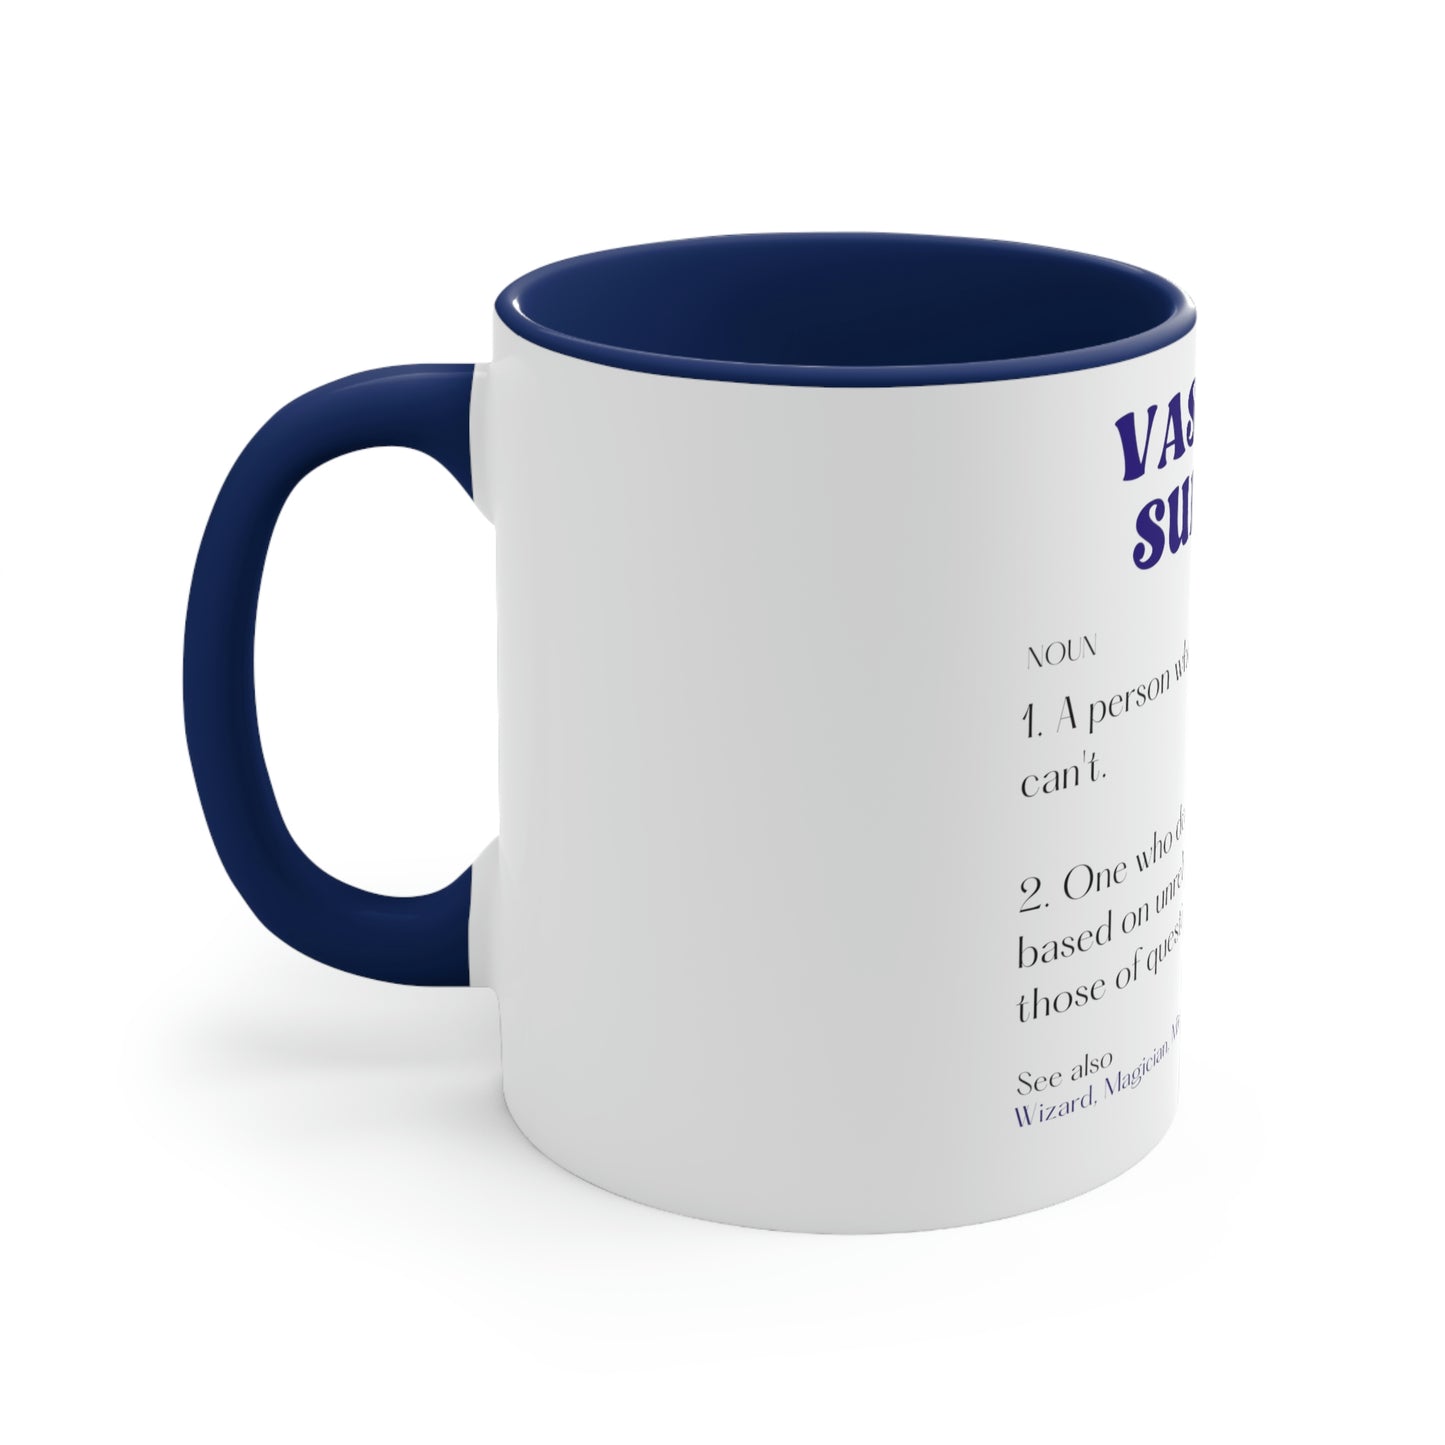 Vascular Surgeon Mug, Dictionary, Funny, Surgical Mug, Coffee, Tea  11oz